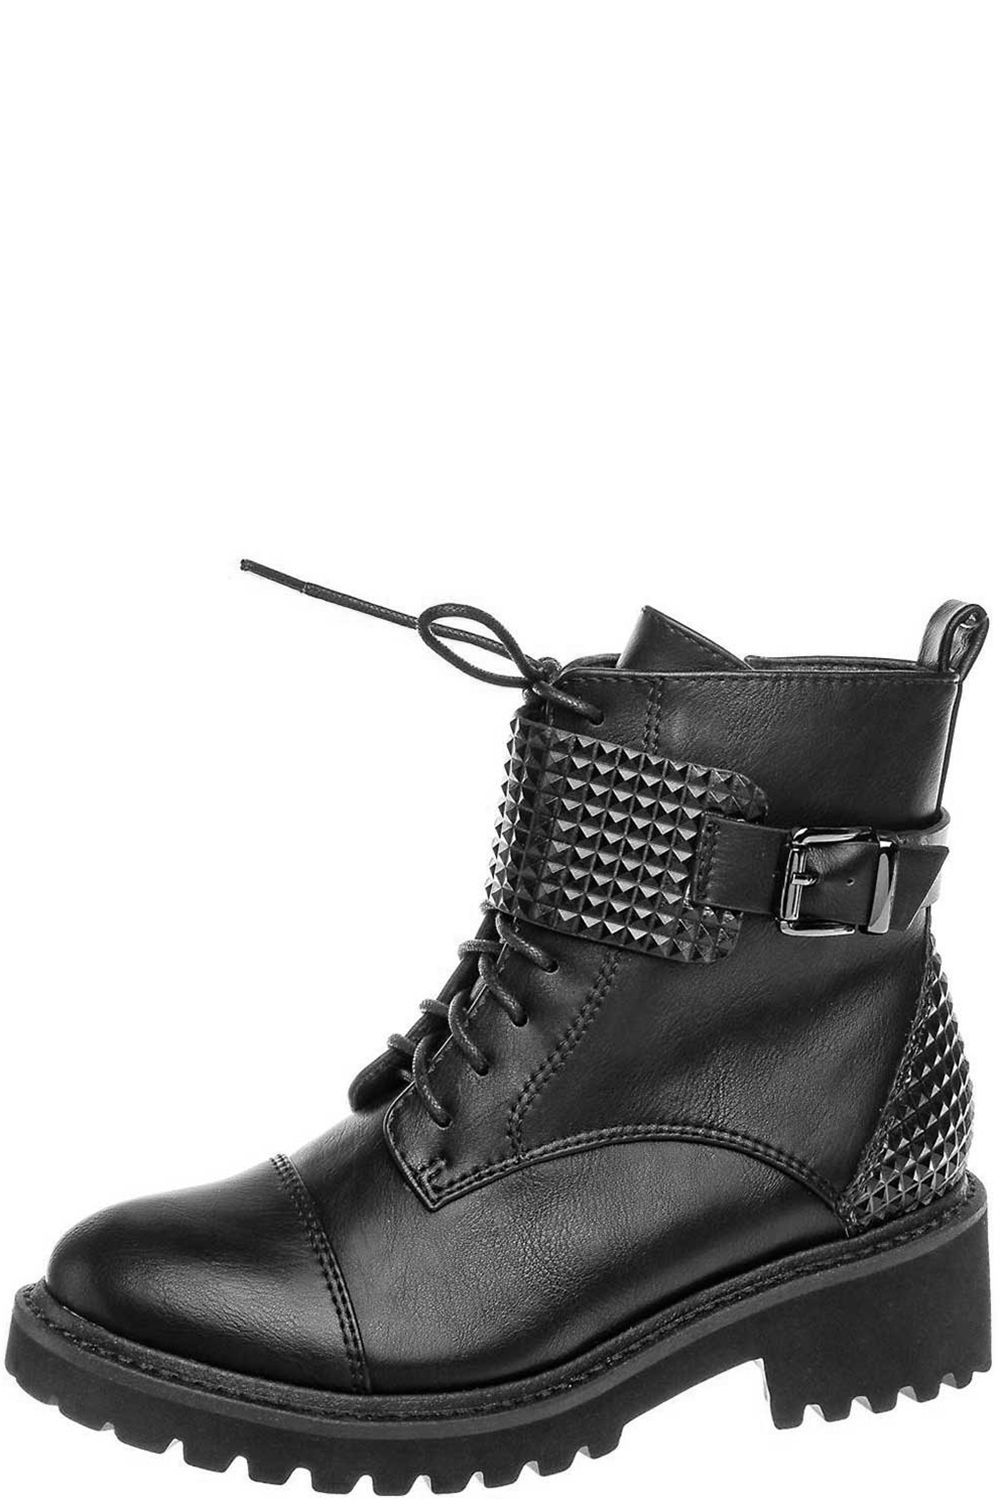 Ботинки Betsy, размер 38, цвет черный 988308/03-02 - фото 1